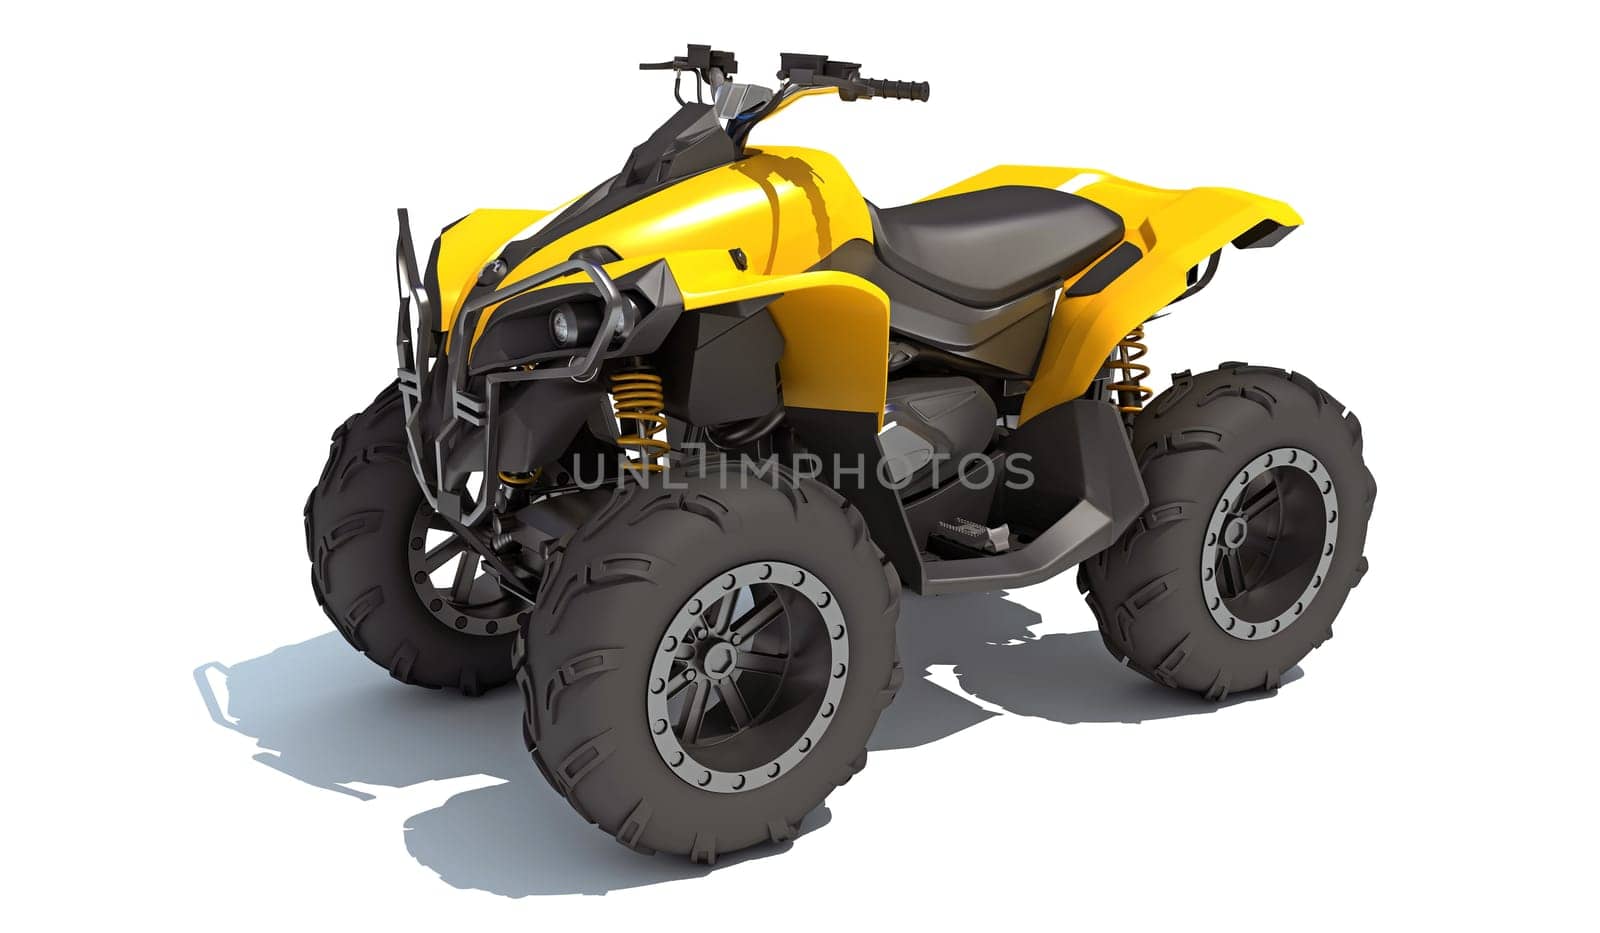 ATV all terrain Vehicle 3D rendering model on white background